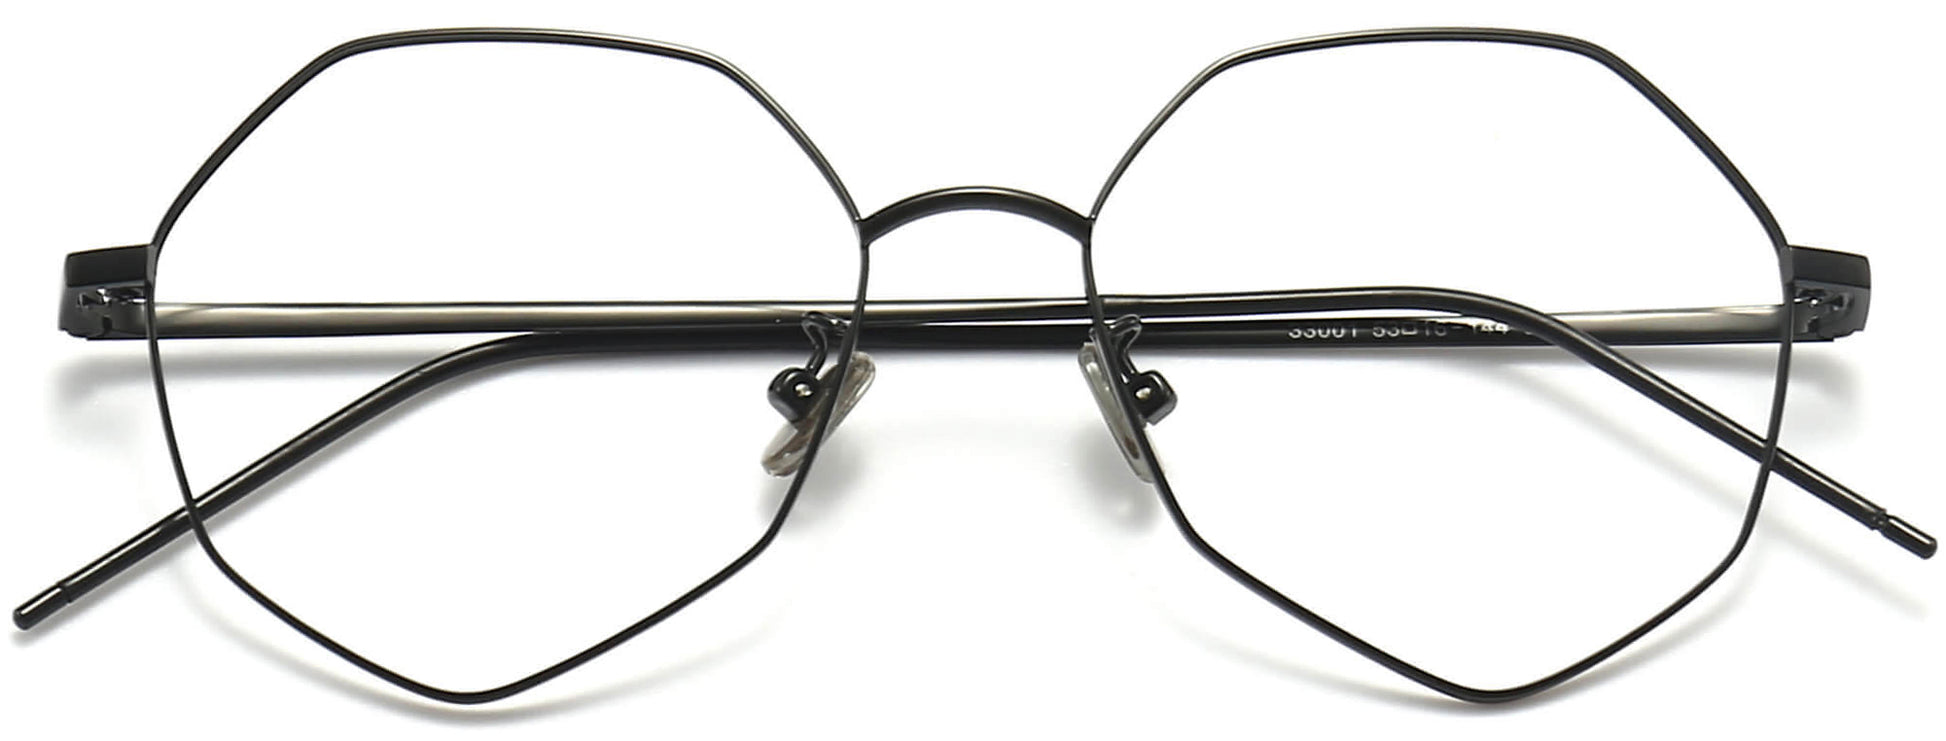 Kash Geometric Black Eyeglasses from ANRRI, closed view